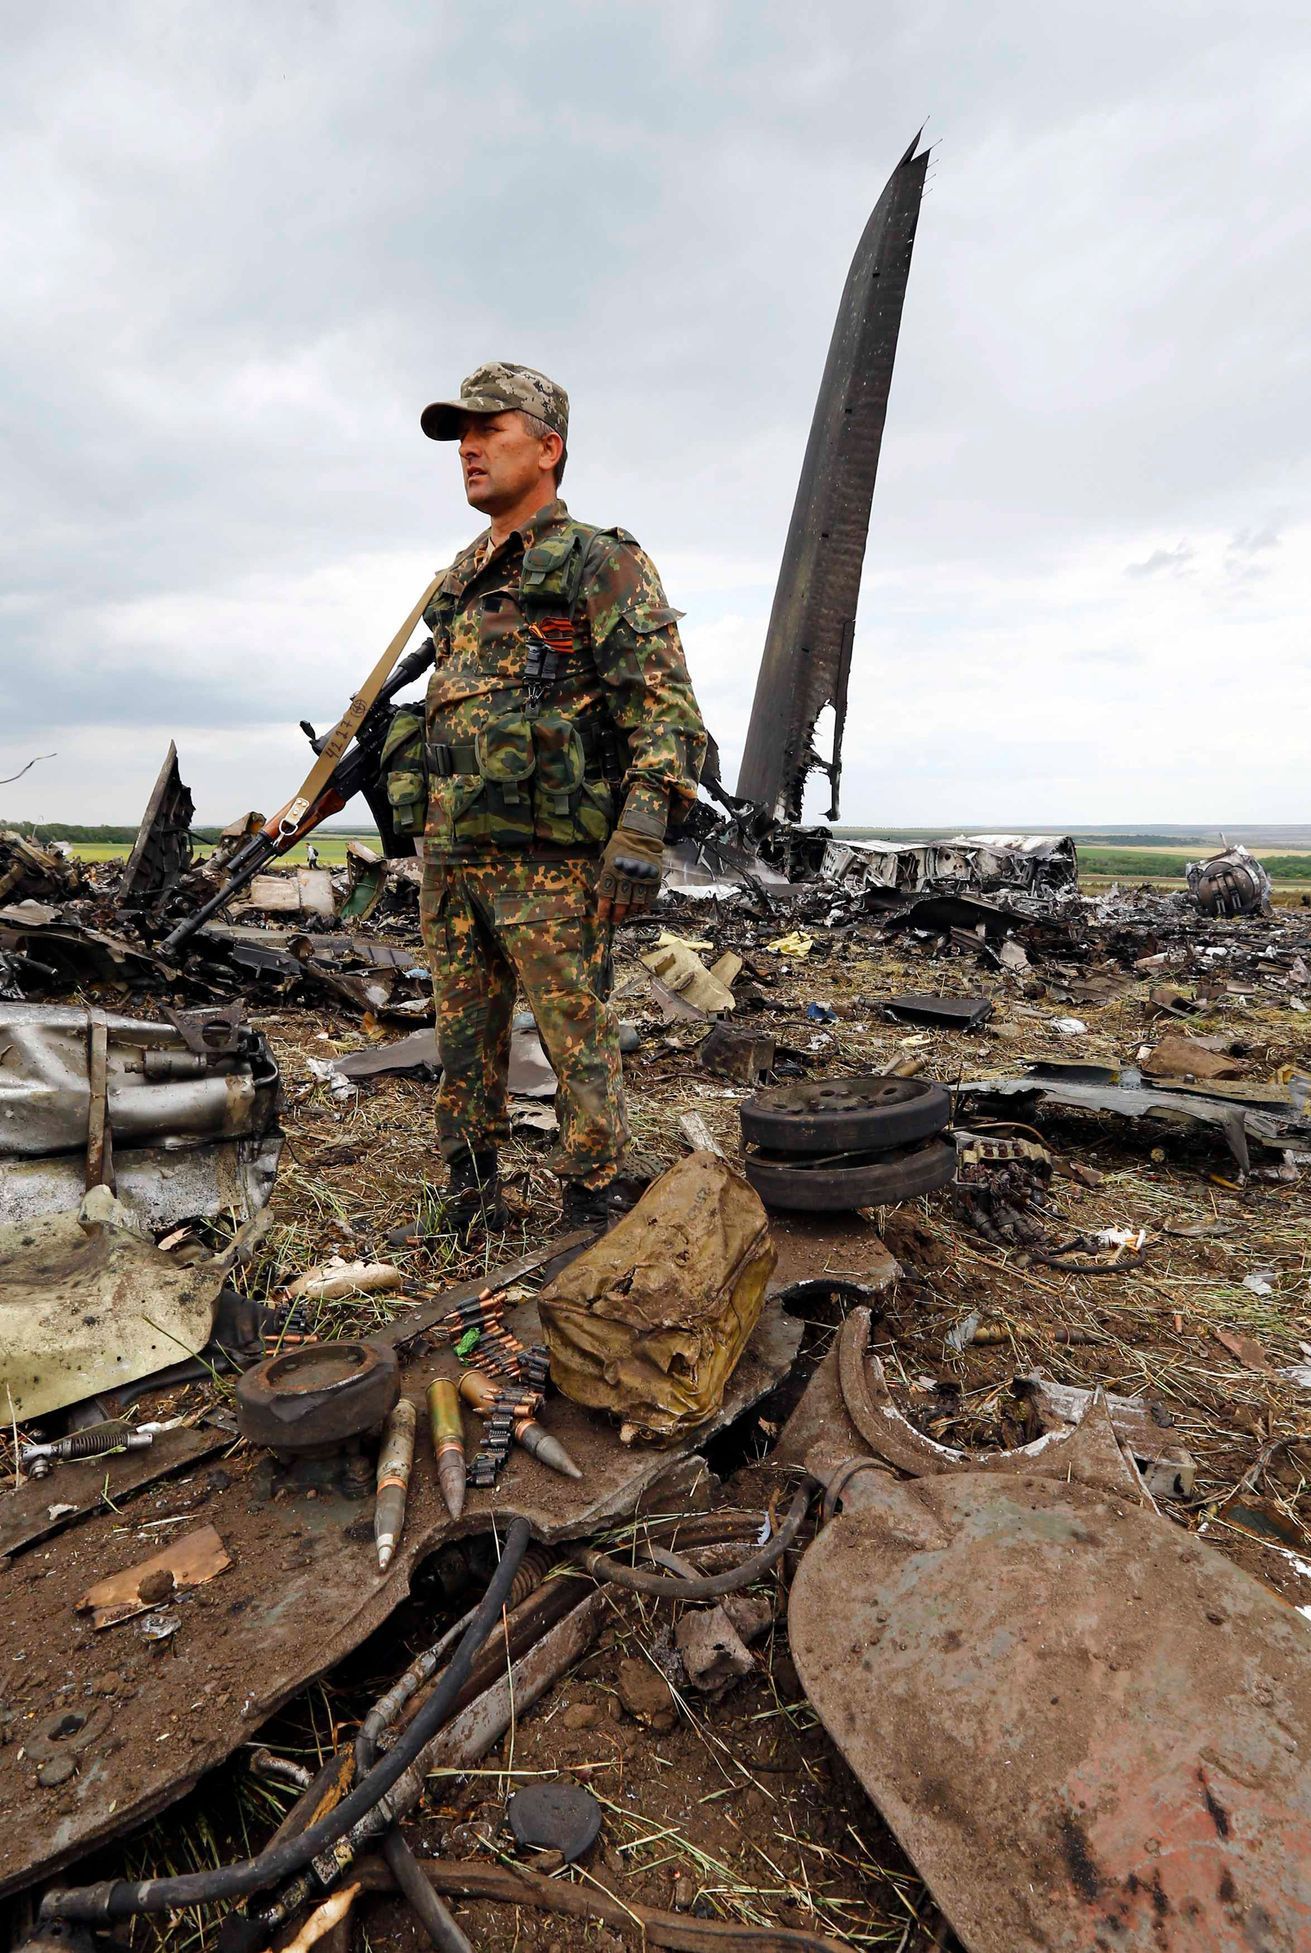 Trosky sestřeleného Il-76 ukrajinské armády v Luhansku.